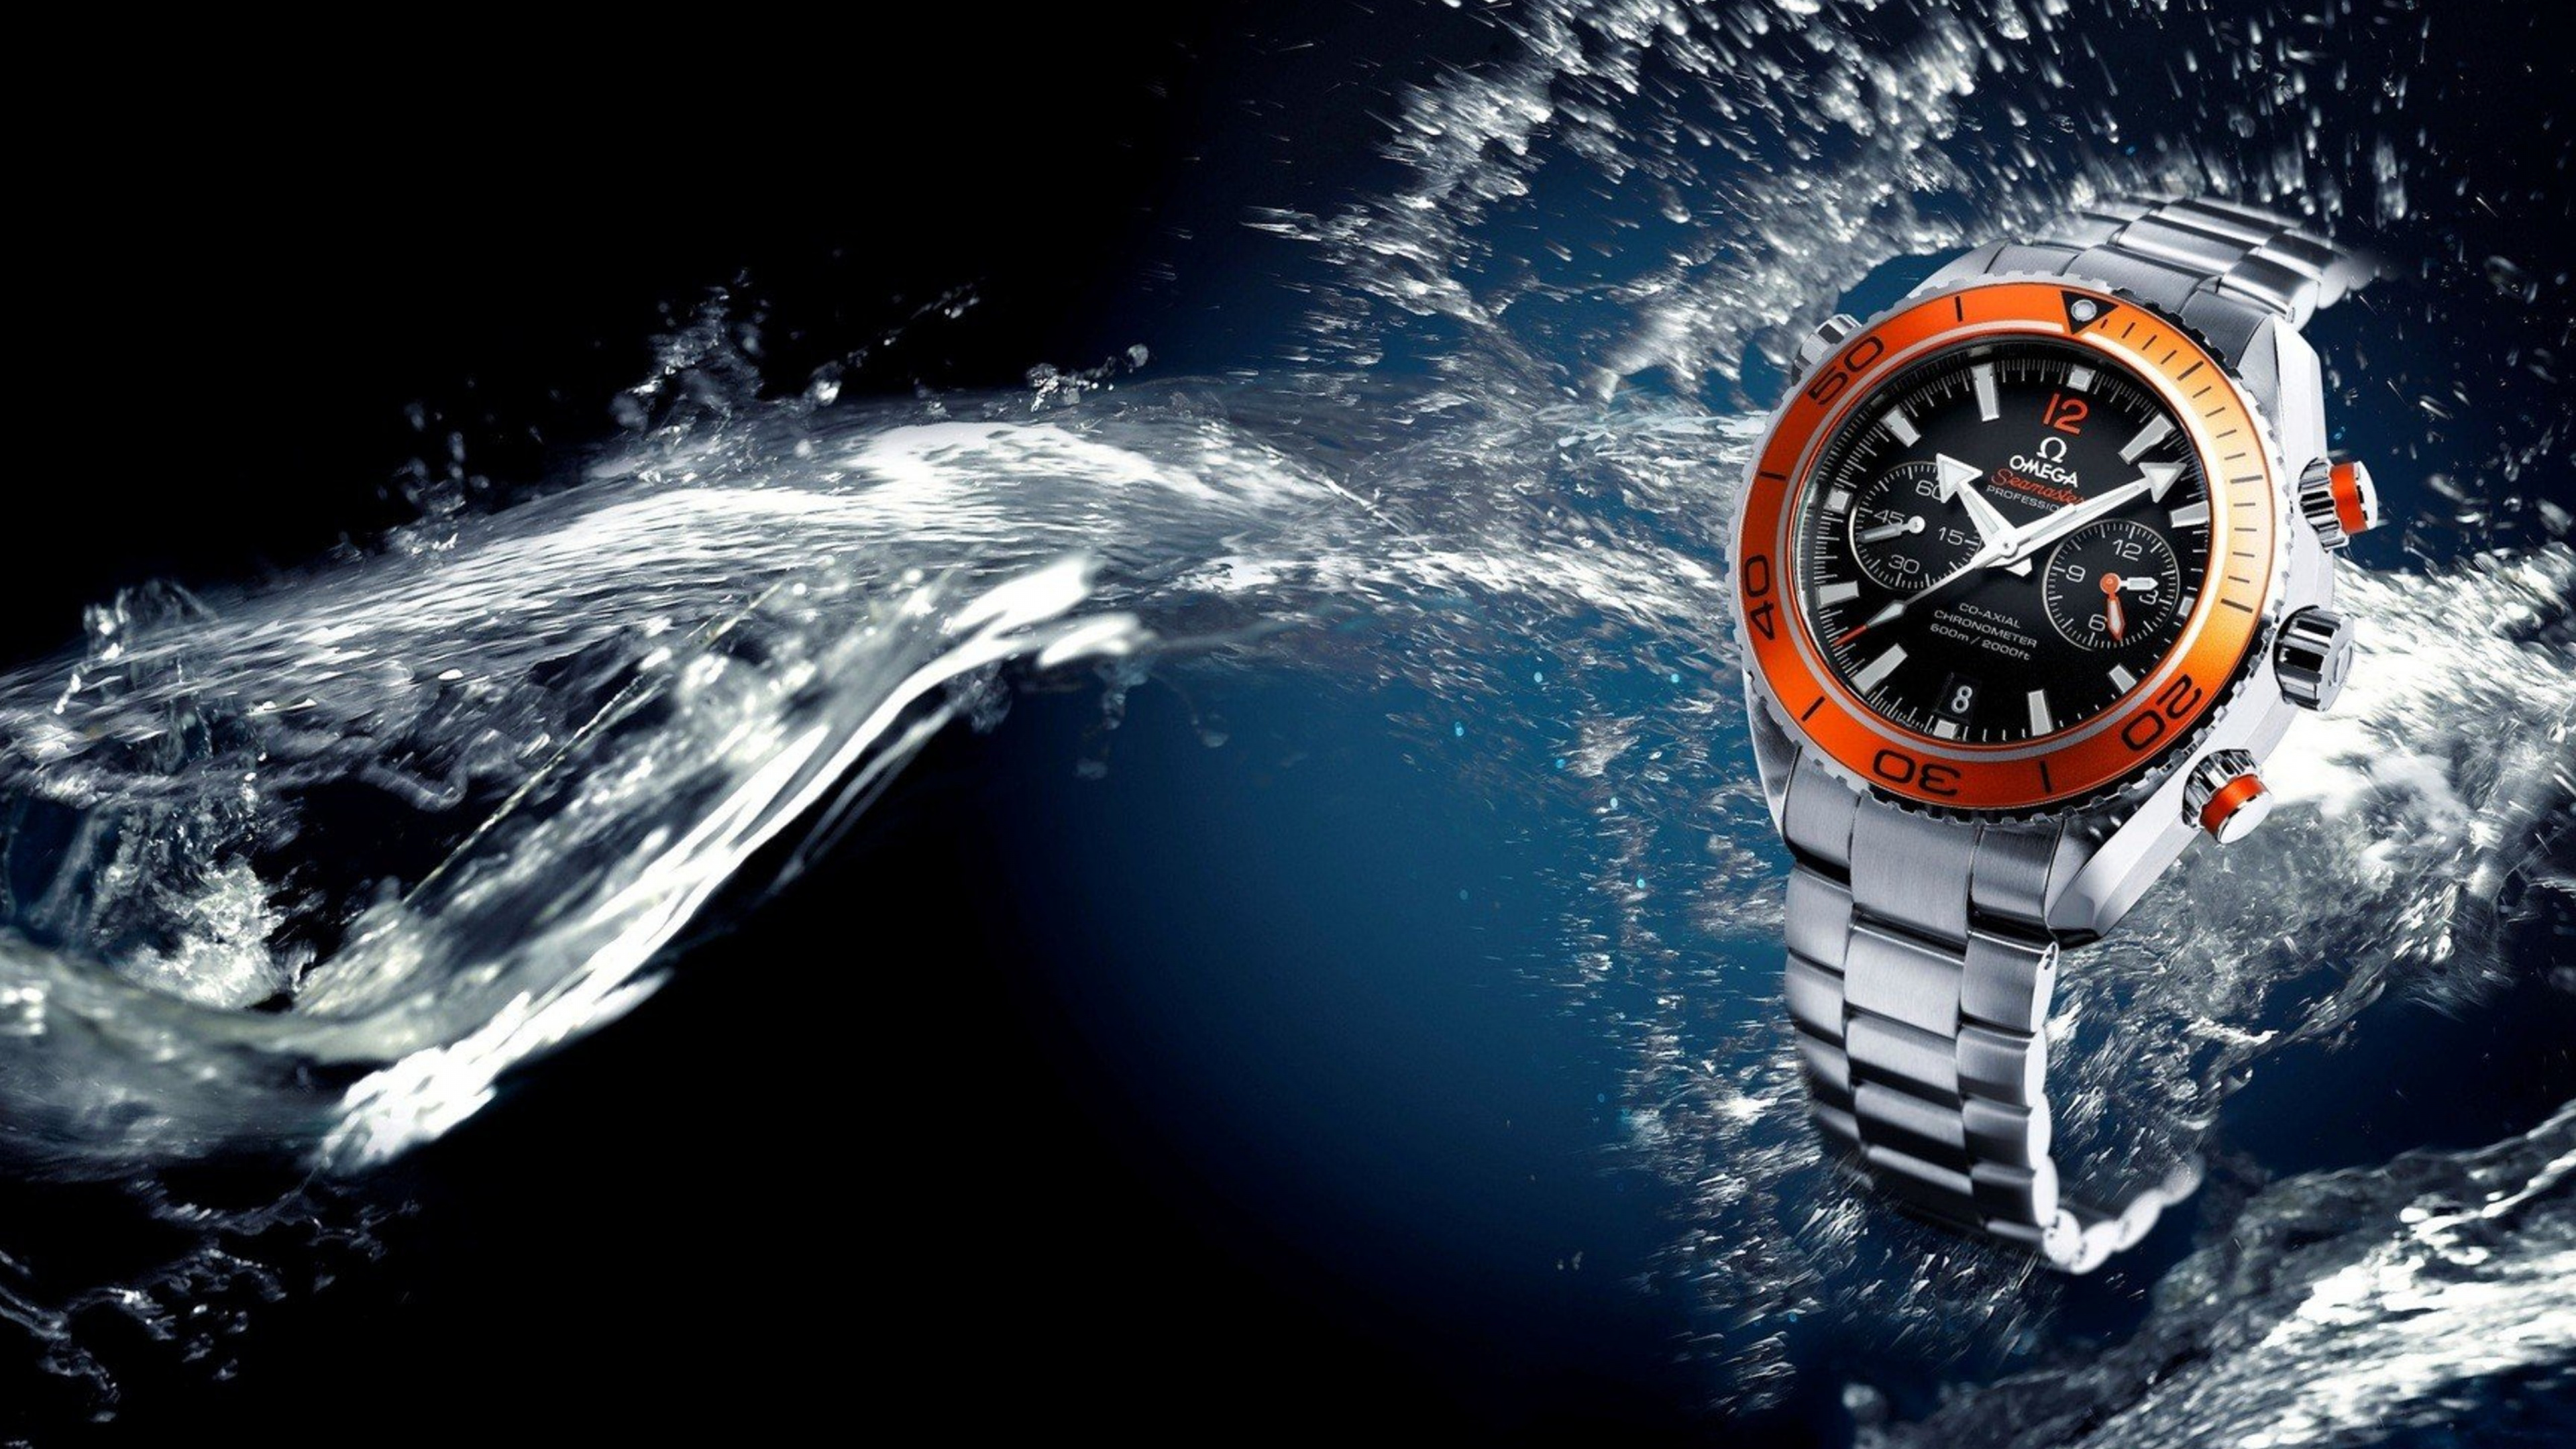 Фон наручные часы. Обои часы Омега симастер. Часы в воде. Швейцарские часы вода. Обои на рабочий стол часы.